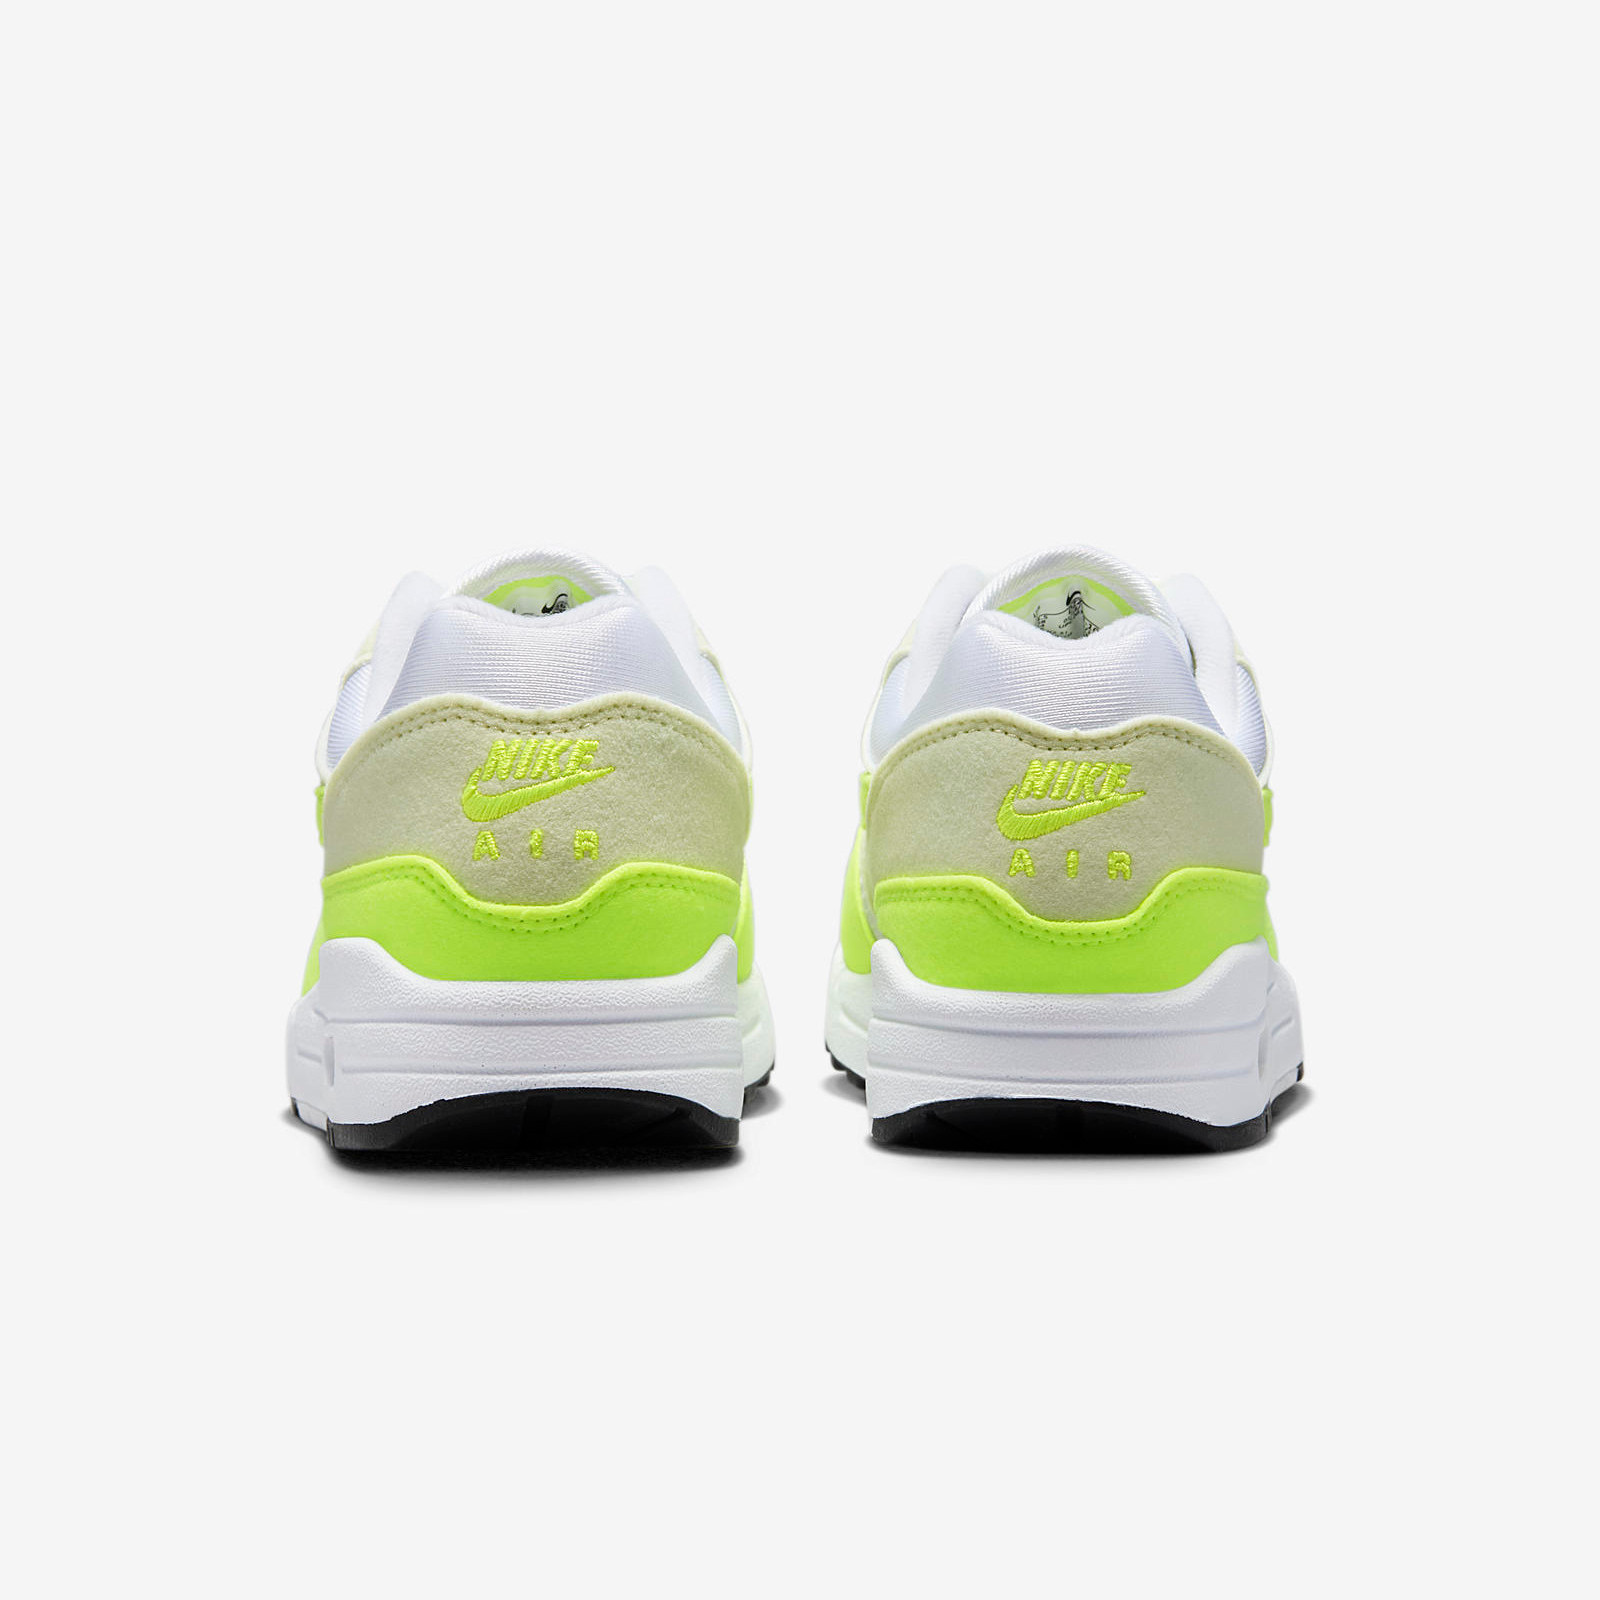 Nike Air Max 1
White / Volt